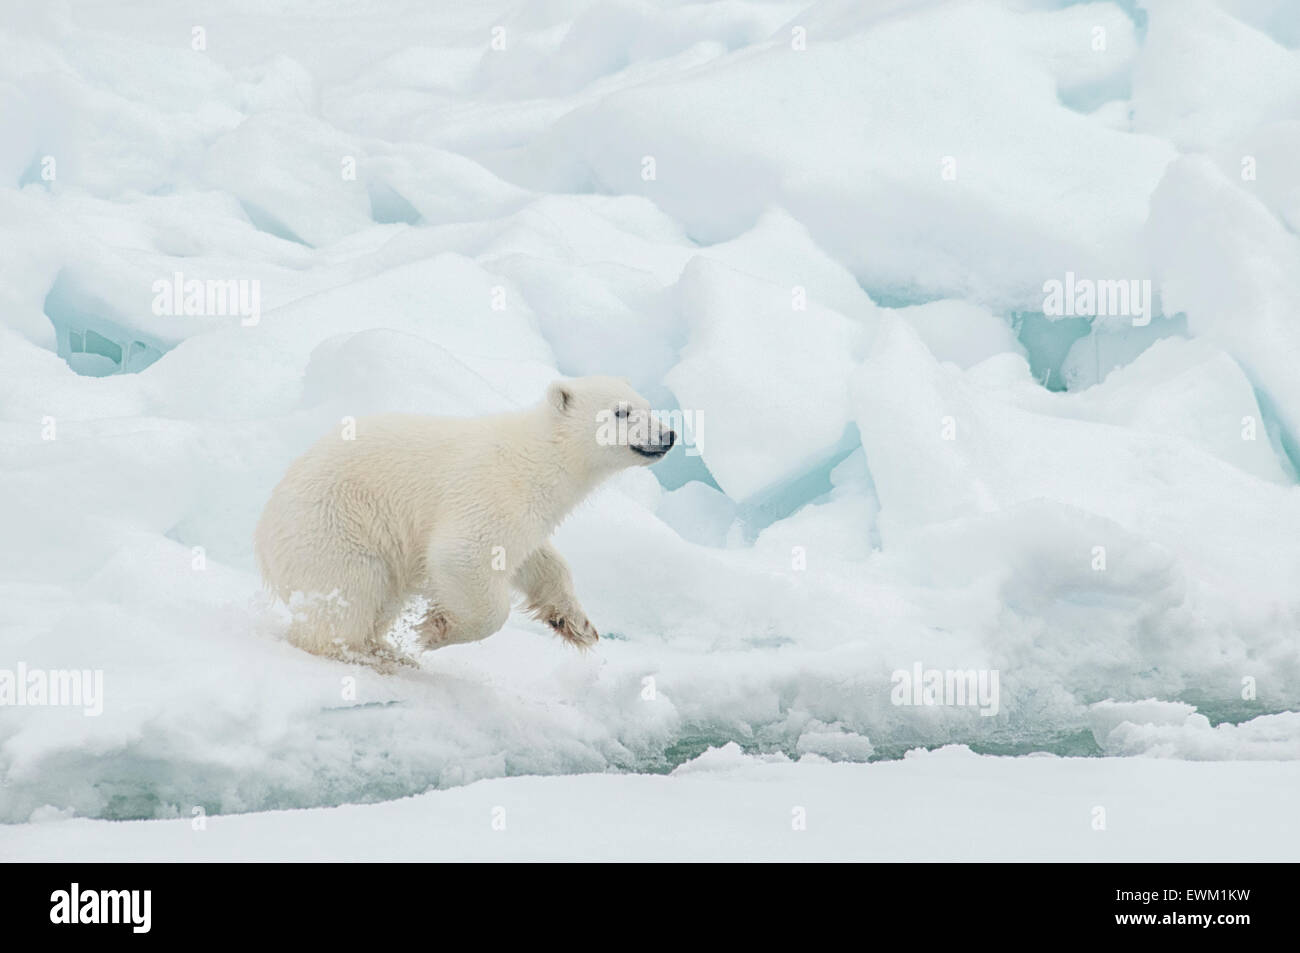 Carino Polar Bear Cub, Ursus maritimus, in esecuzione sul Olgastretet Pack ghiaccio, arcipelago delle Svalbard, Norvegia Foto Stock